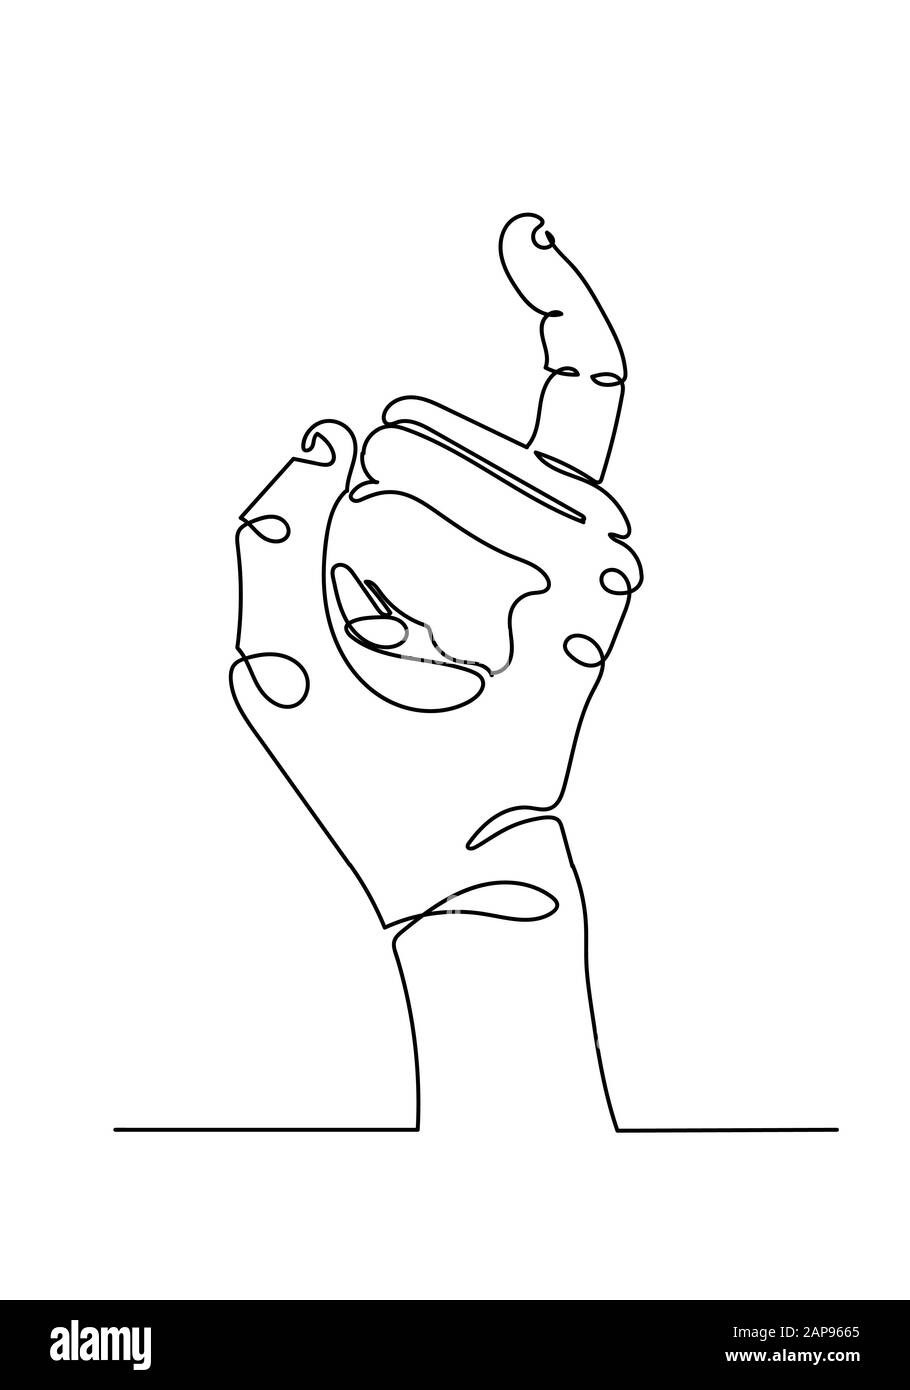 Durchgängige Ein-Linien-Zeichnung der Hände zeigt kleine Finger, Konzept eines Vertrags und Freundschaft. Stockfoto